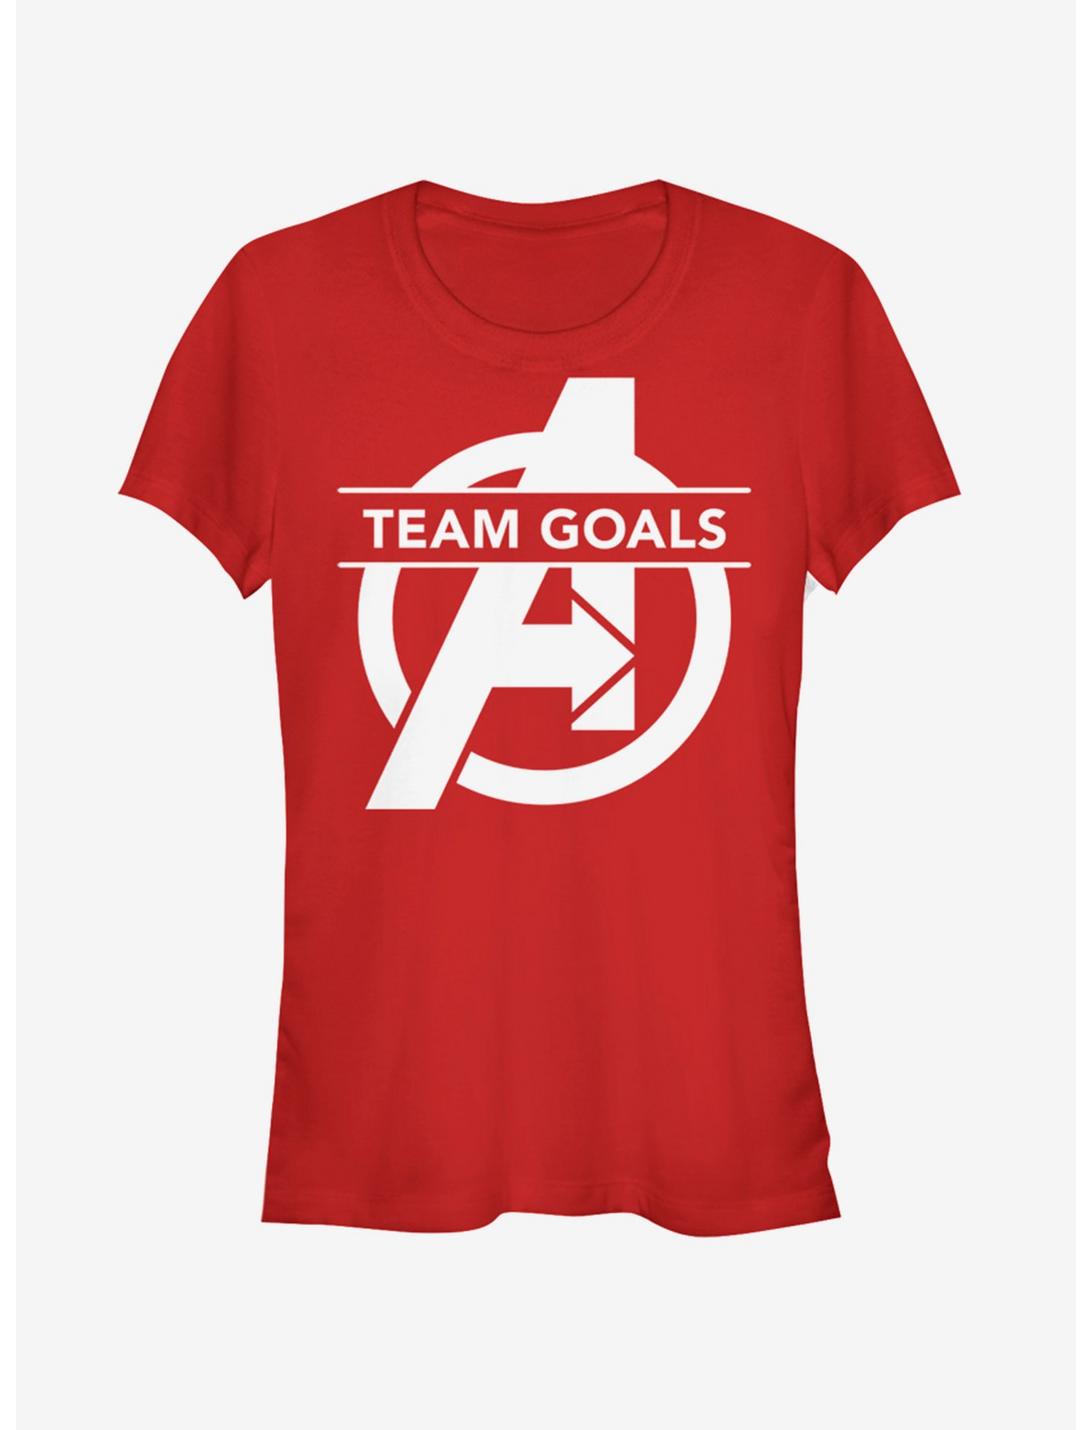 Marvel Avengers: Endgame Team Goals Girls Red T-Shirt, RED, hi-res